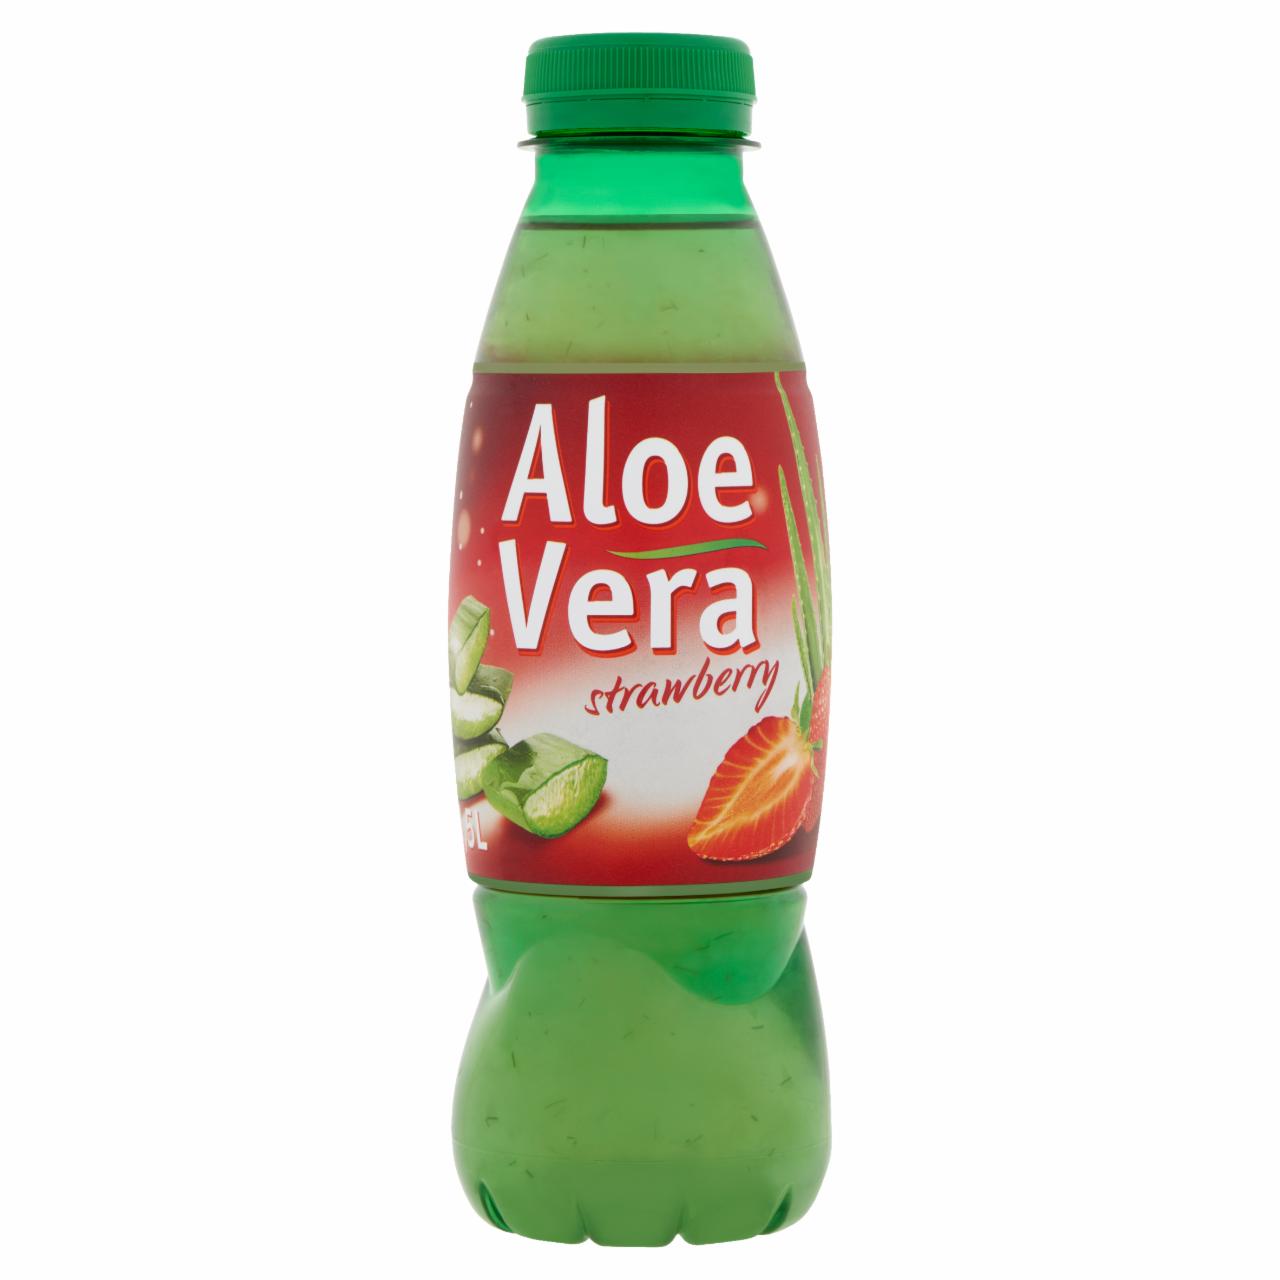 Képek - Aloe Vera szénsavmentes gyümölcsital aloe vera darabokkal és eper ízesítéssel 0,5 l